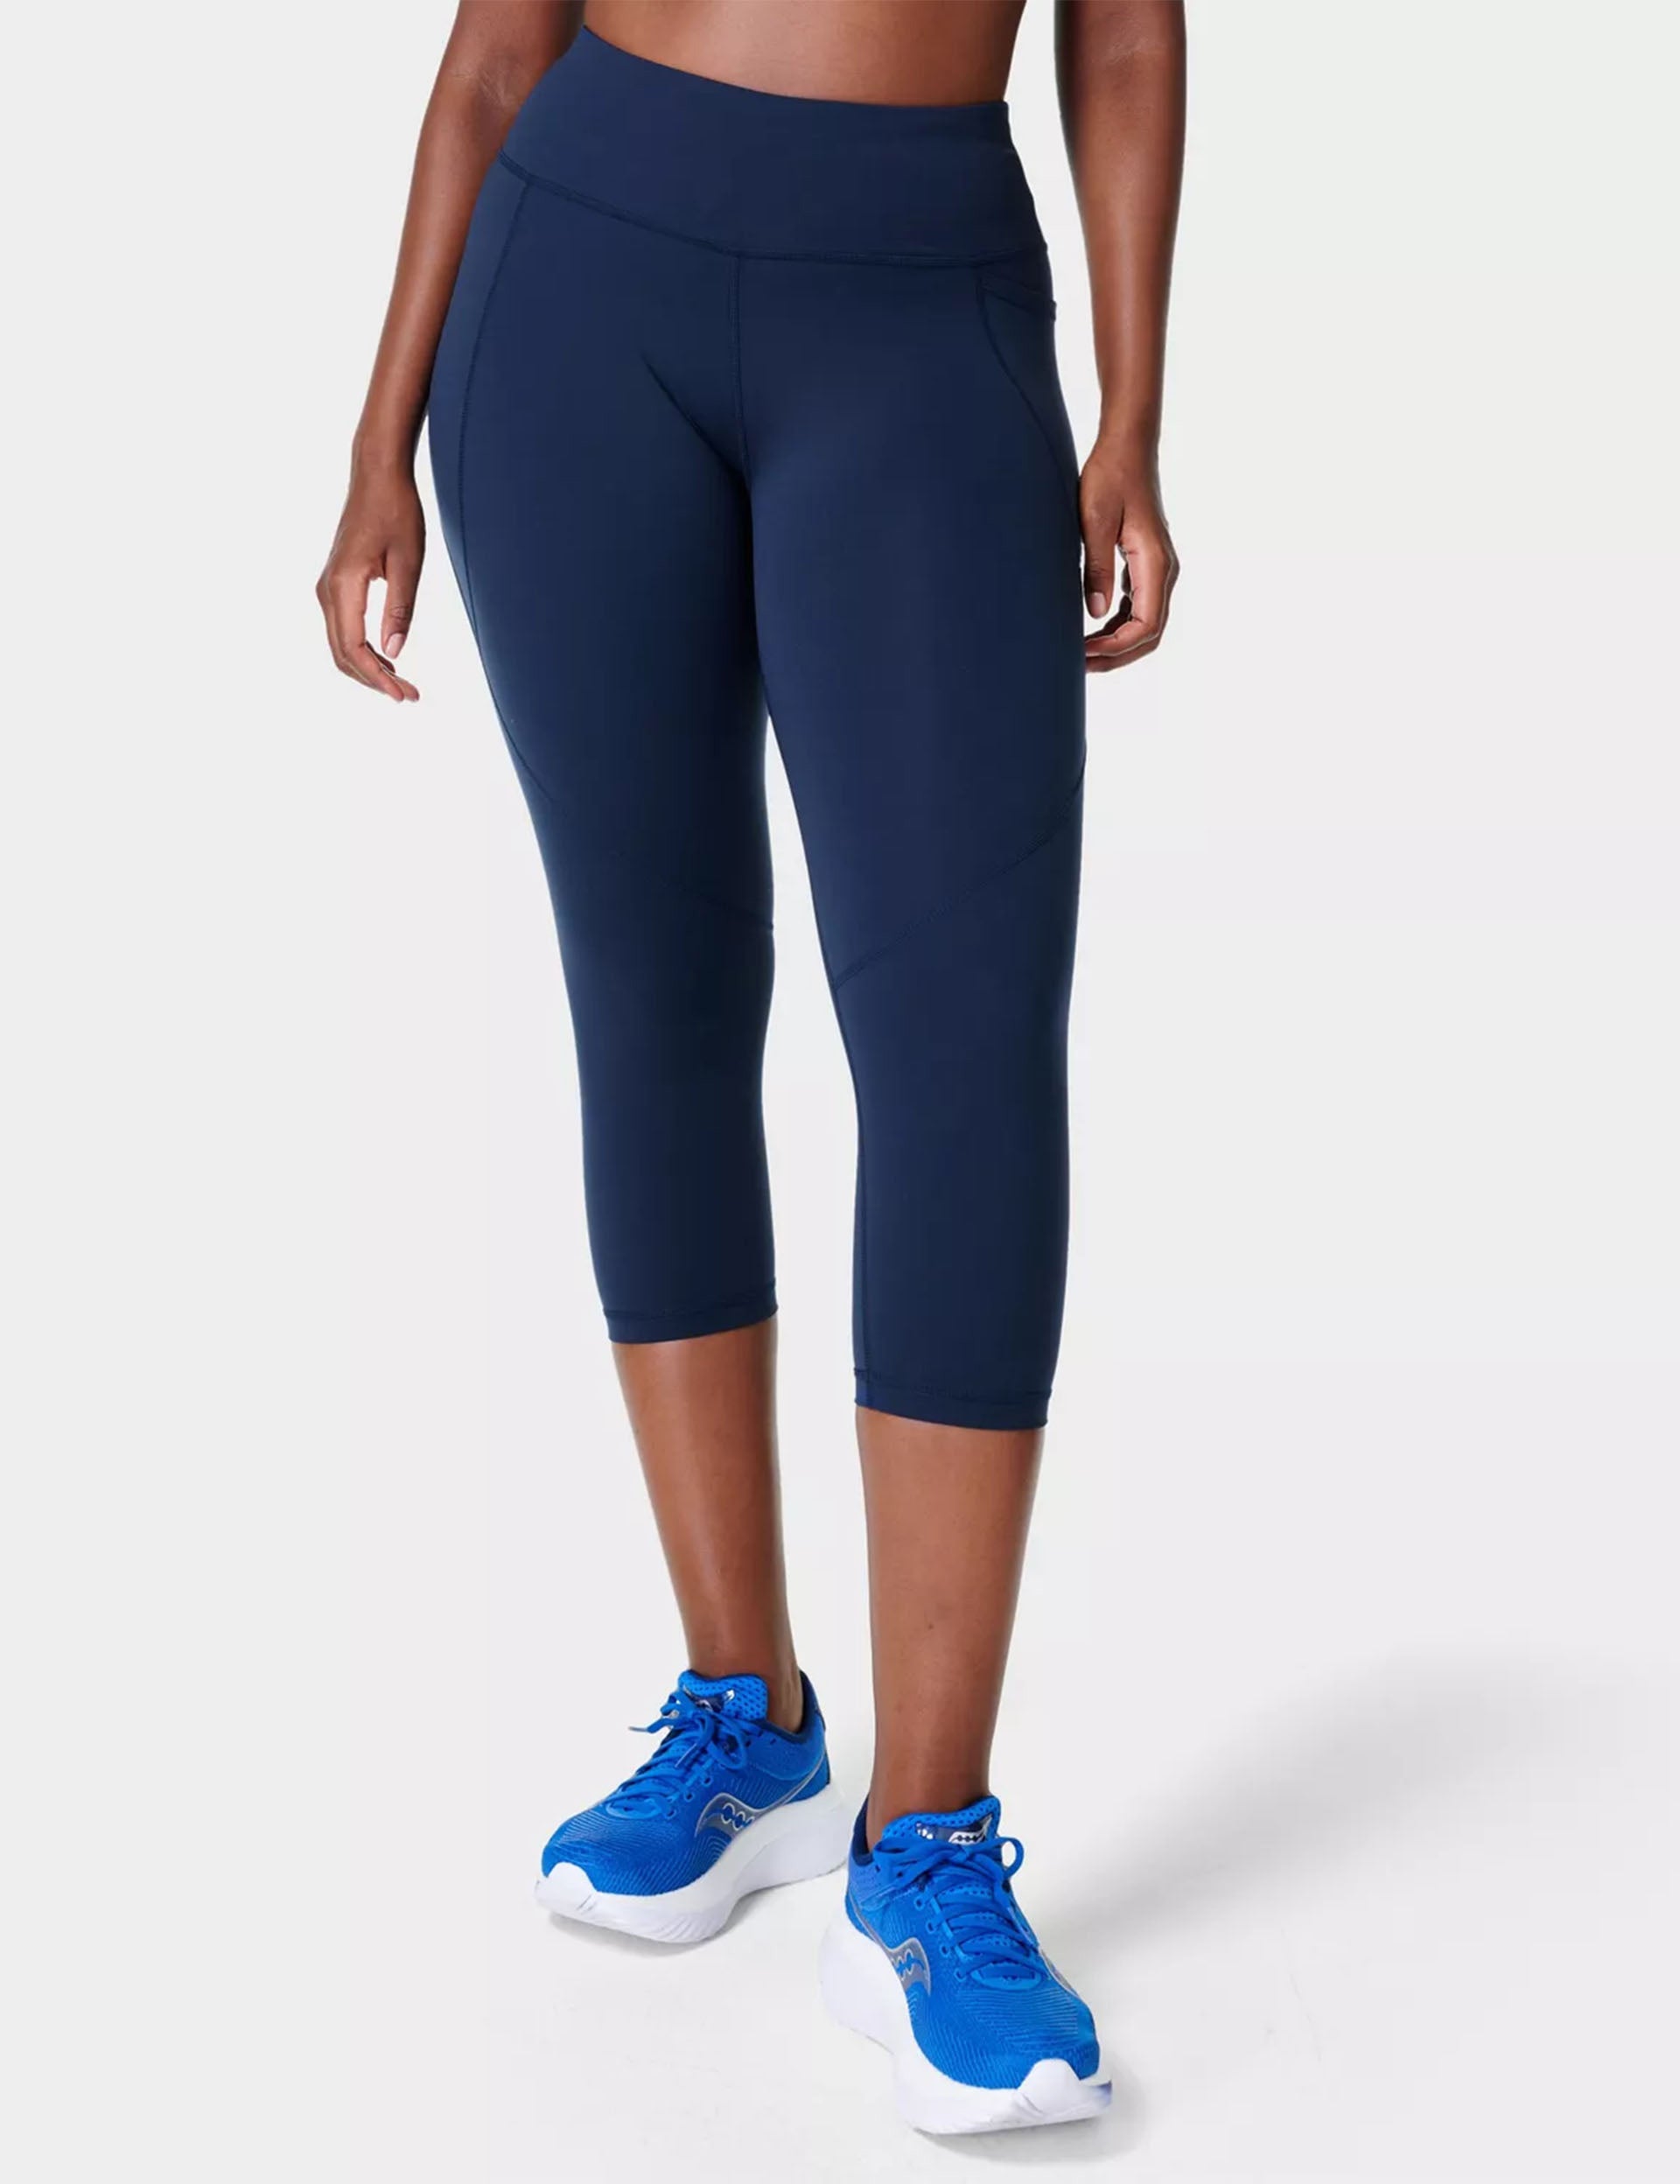 Sweaty Betty POWER ULTRASCULPT HIGH WAIST WORKOUT LEGGING - Leggings - navy  blue/blue 